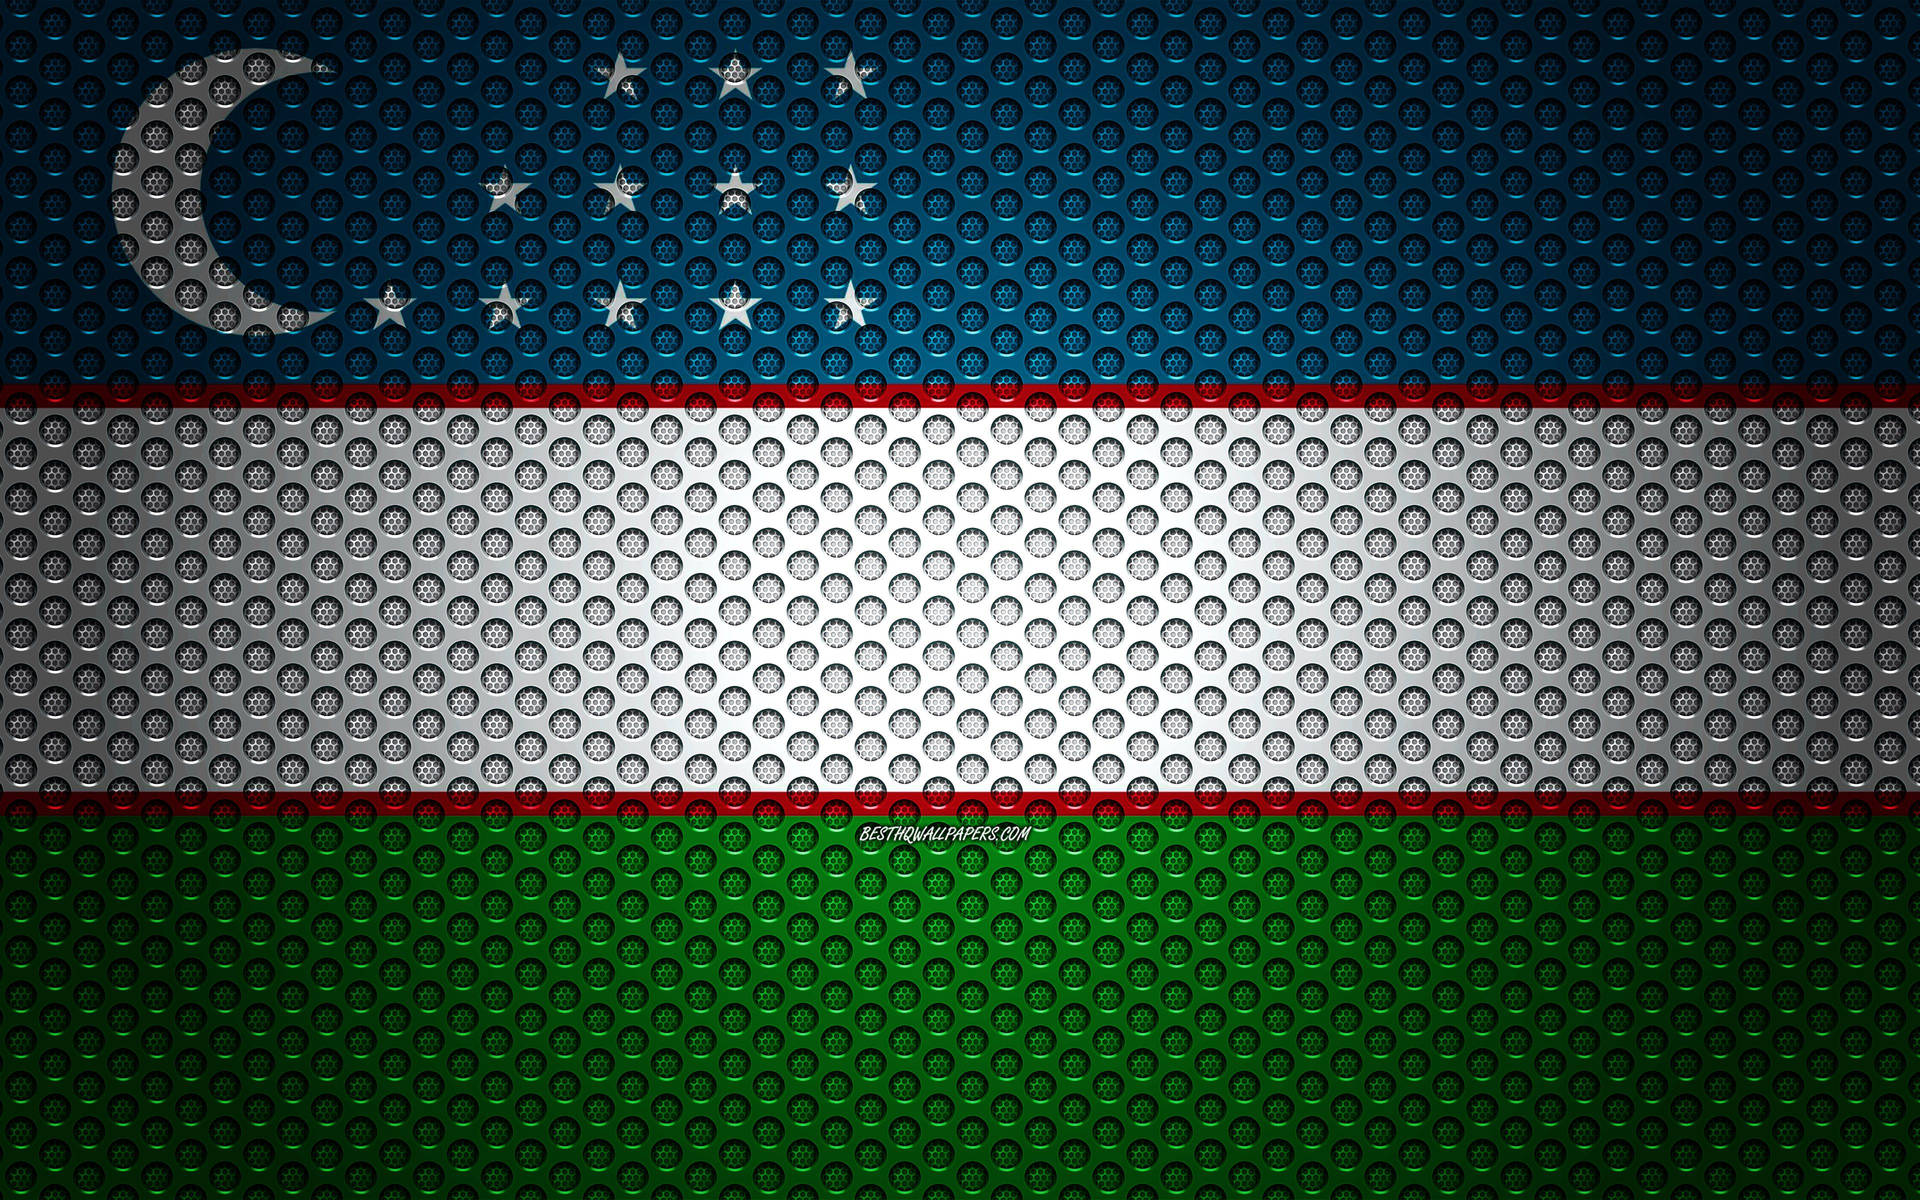 Banderade Uzbekistán En Colores Metálicos Fondo de pantalla